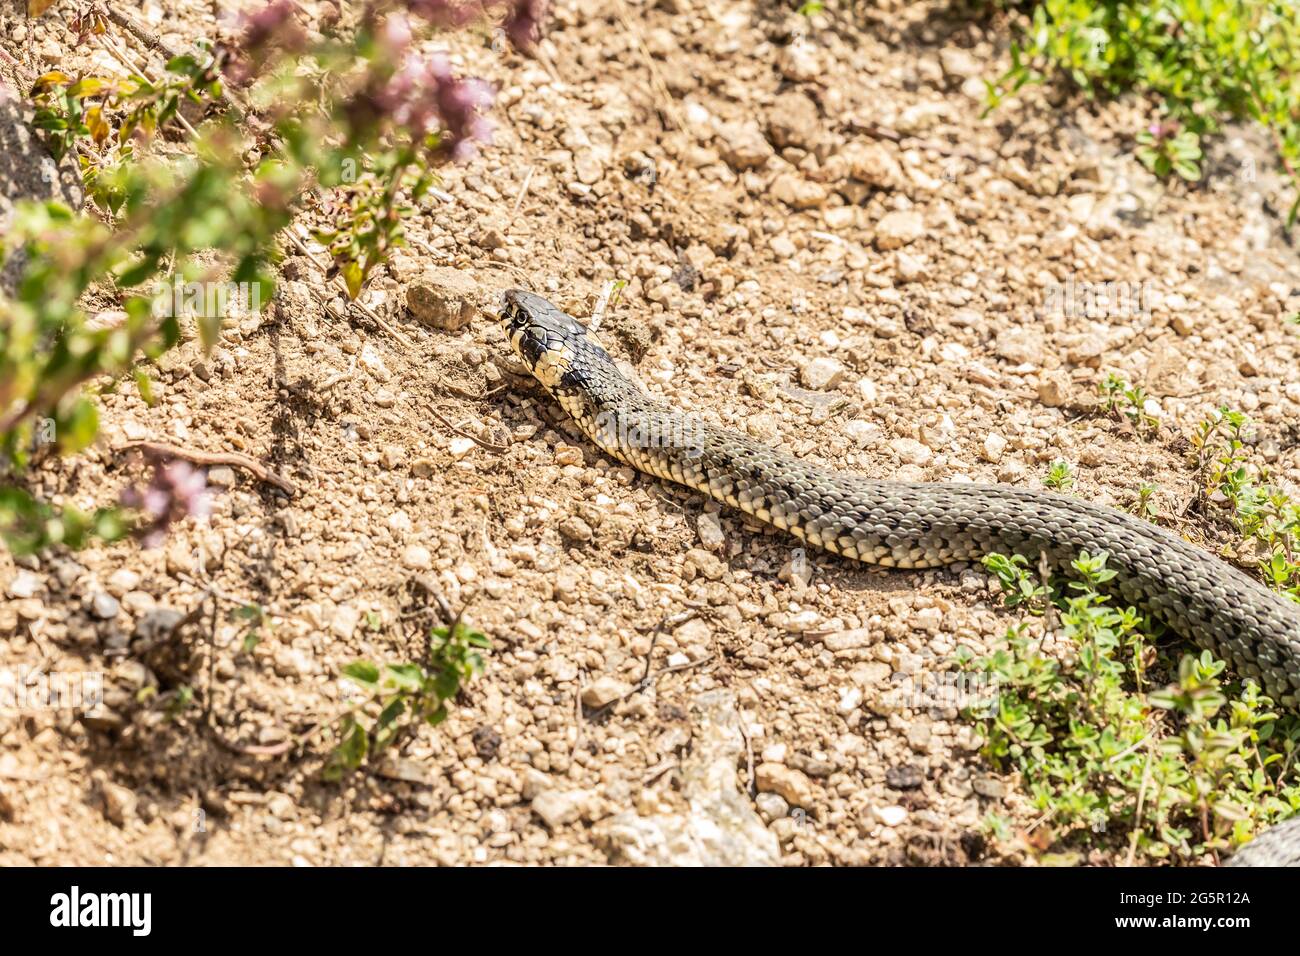 Primer plano de una serpiente de pasto que se arrastra en un jardín Foto de stock